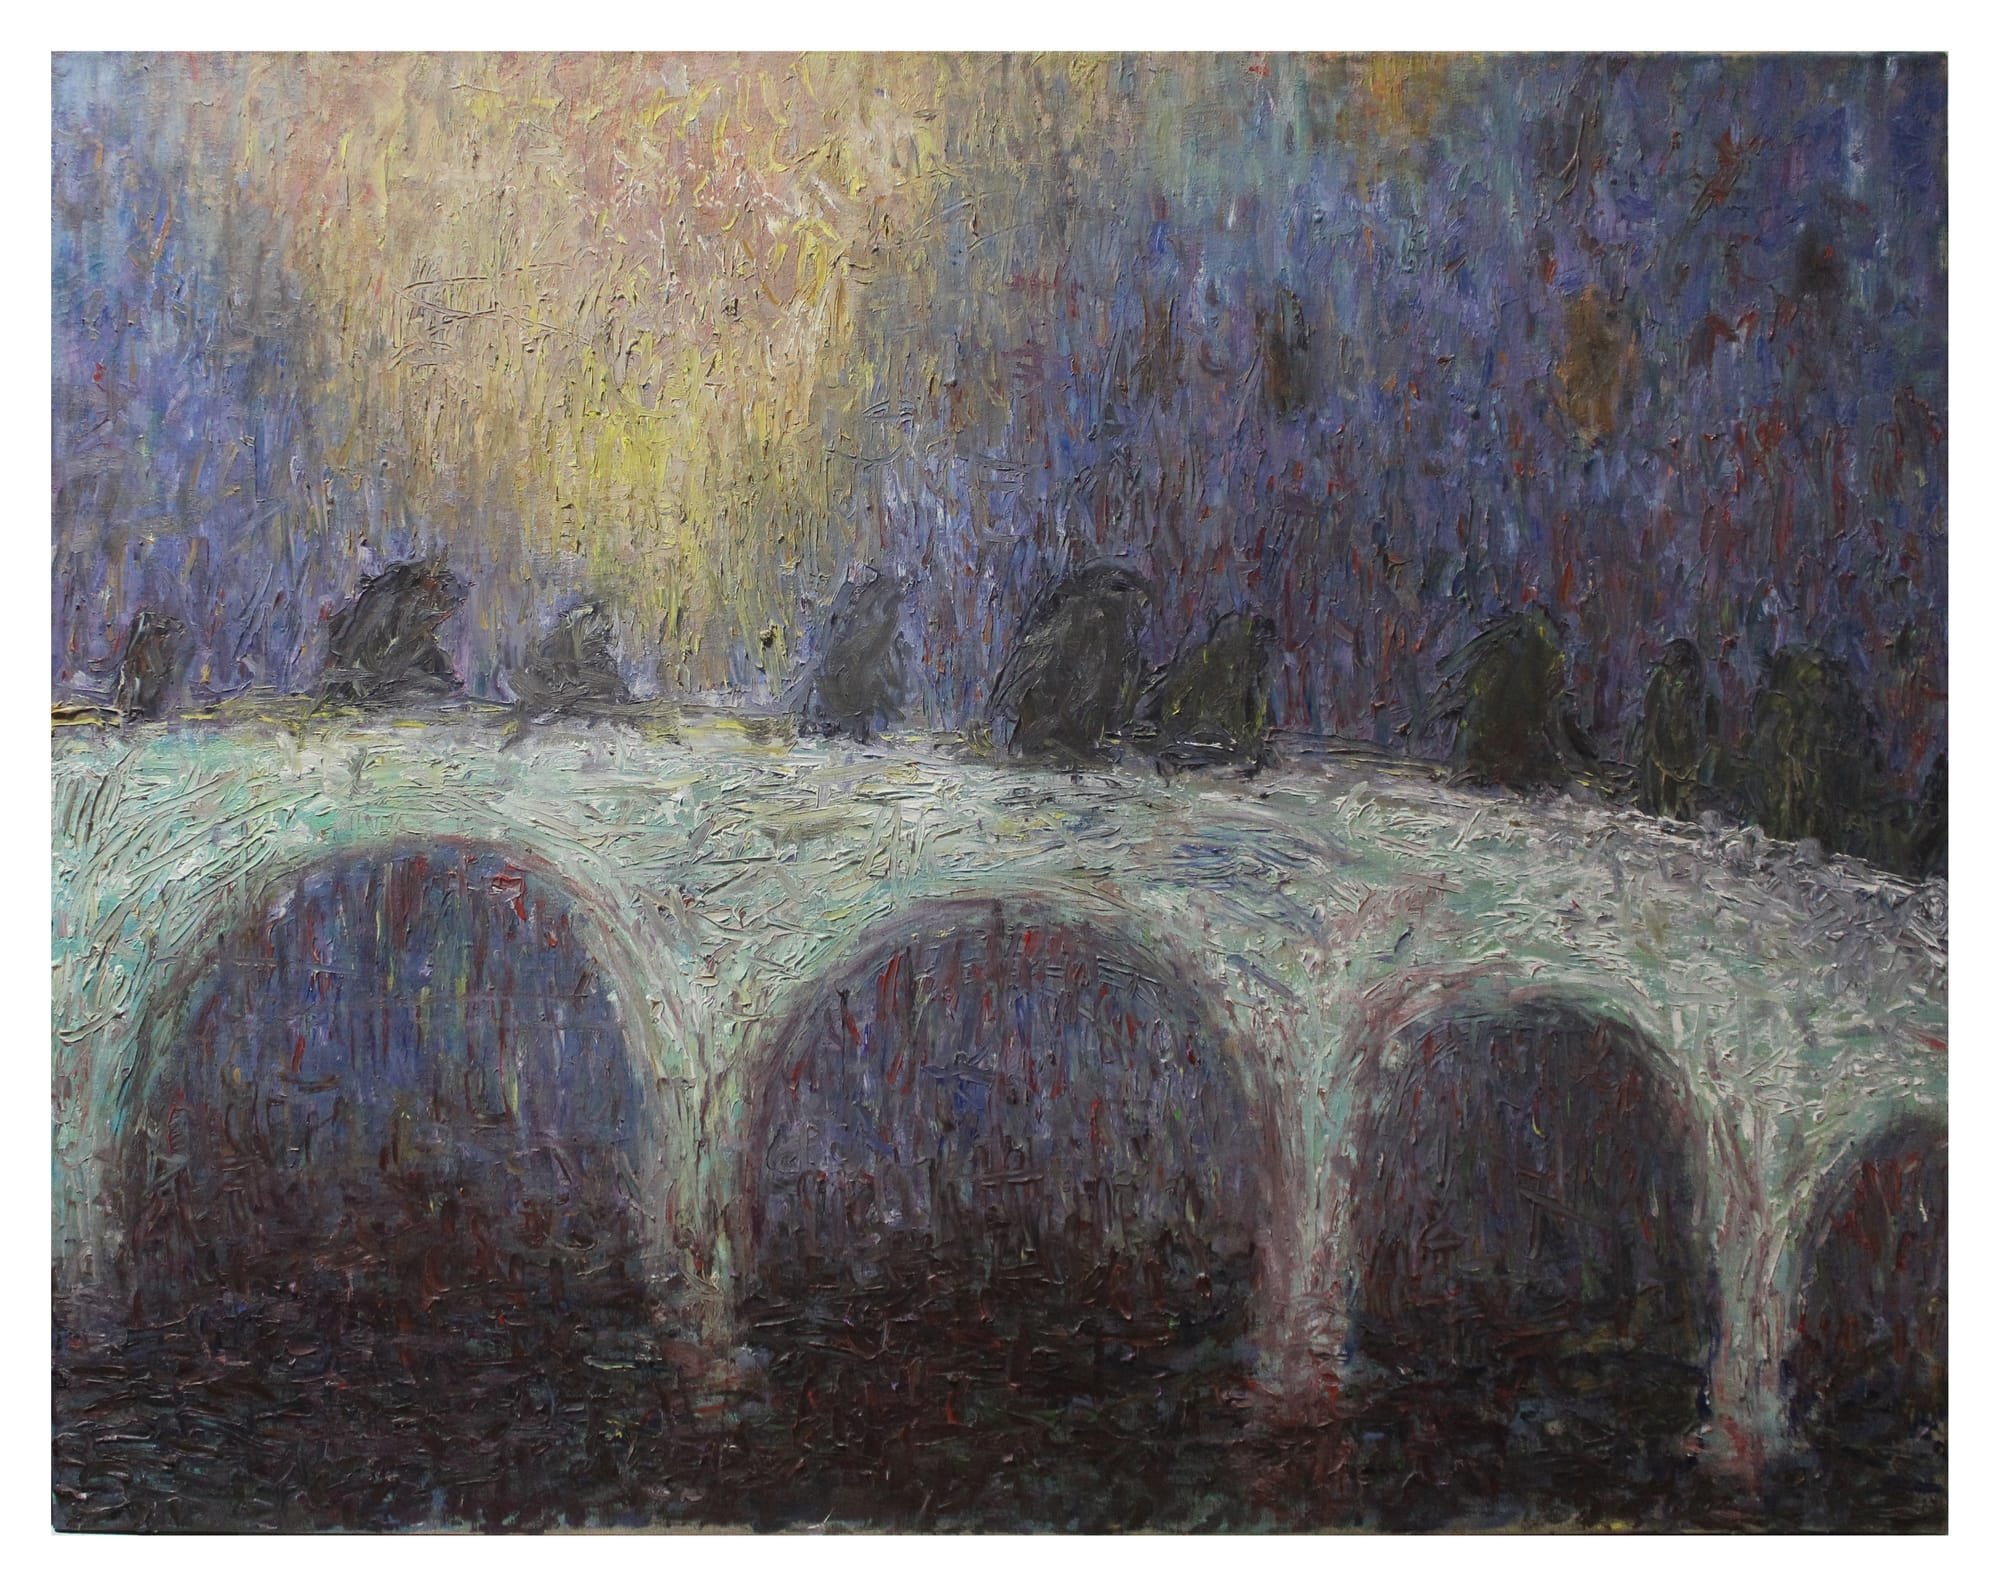 The Bridge, 2003